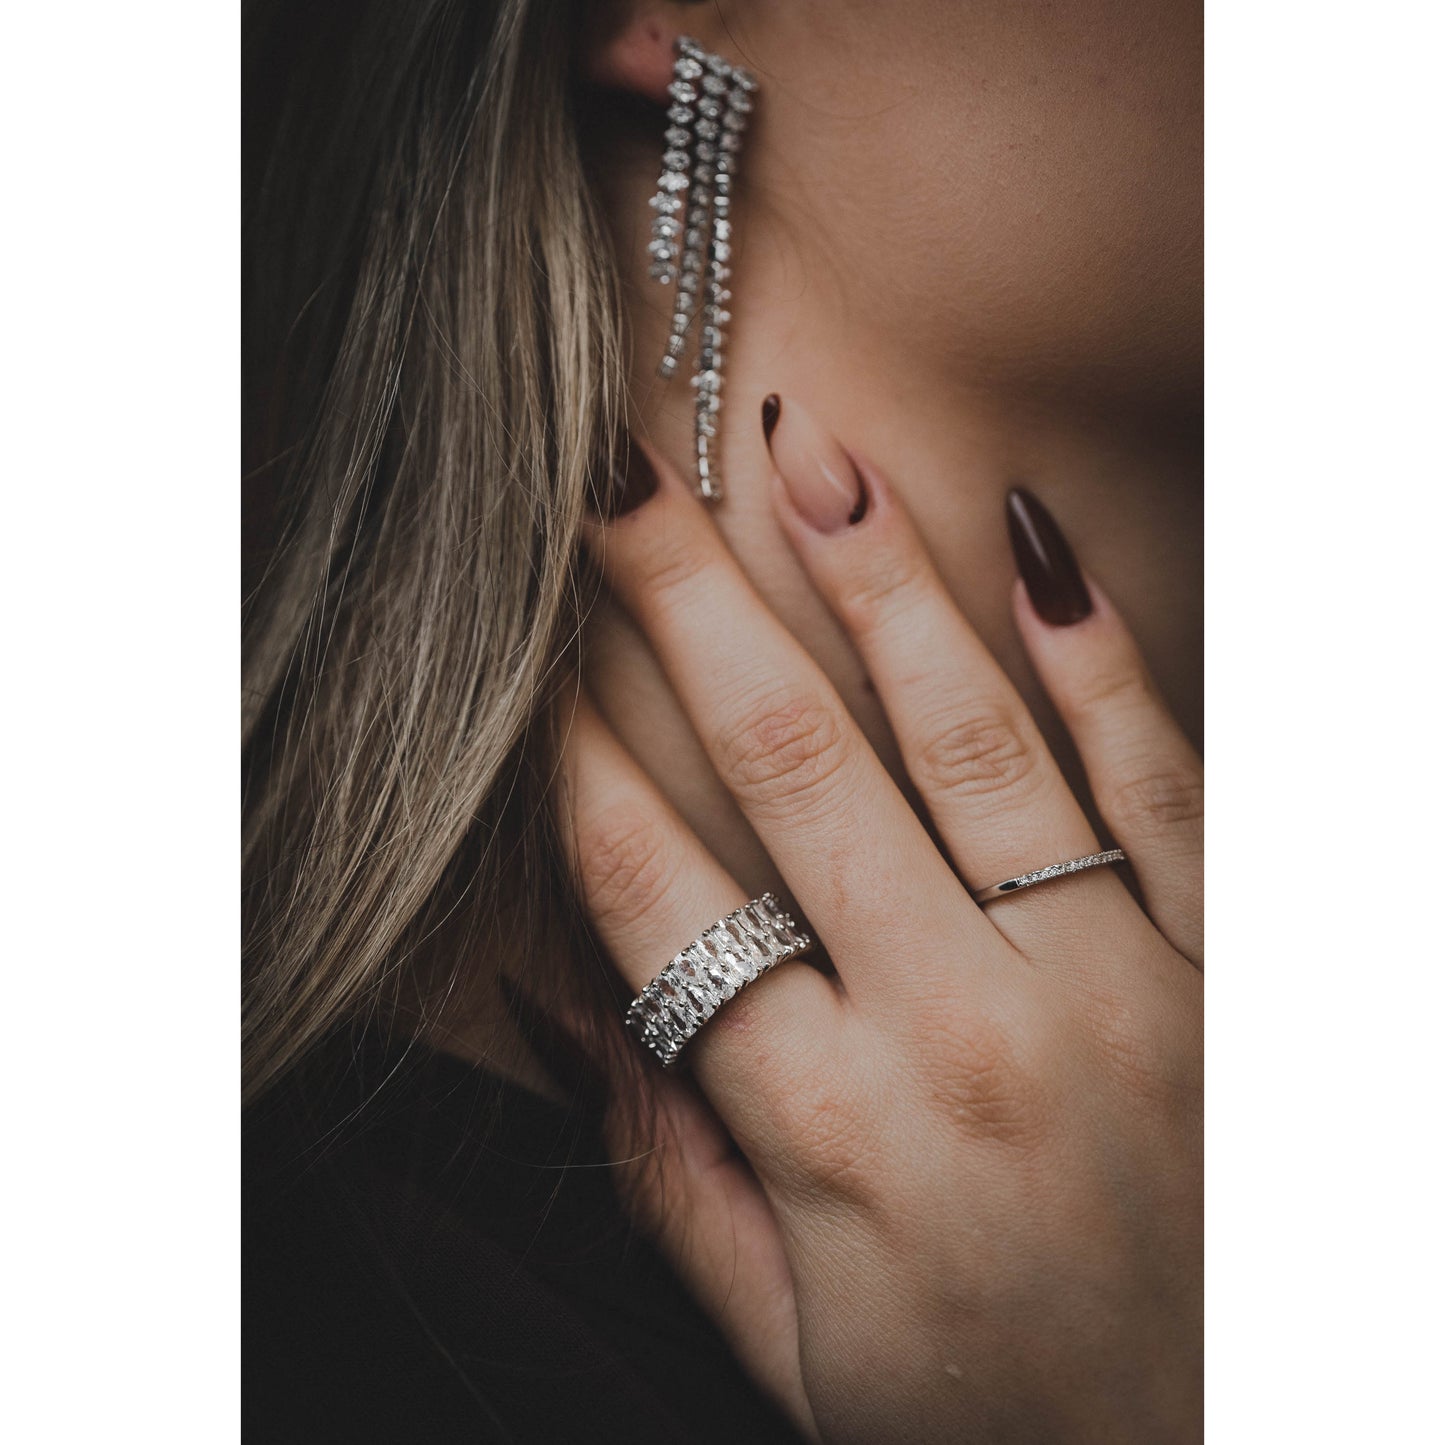 Lona Ring Yasemen Store Schmuck Accessoires 925 Sterling Silber Zirkonia jewel jewelry ring silber